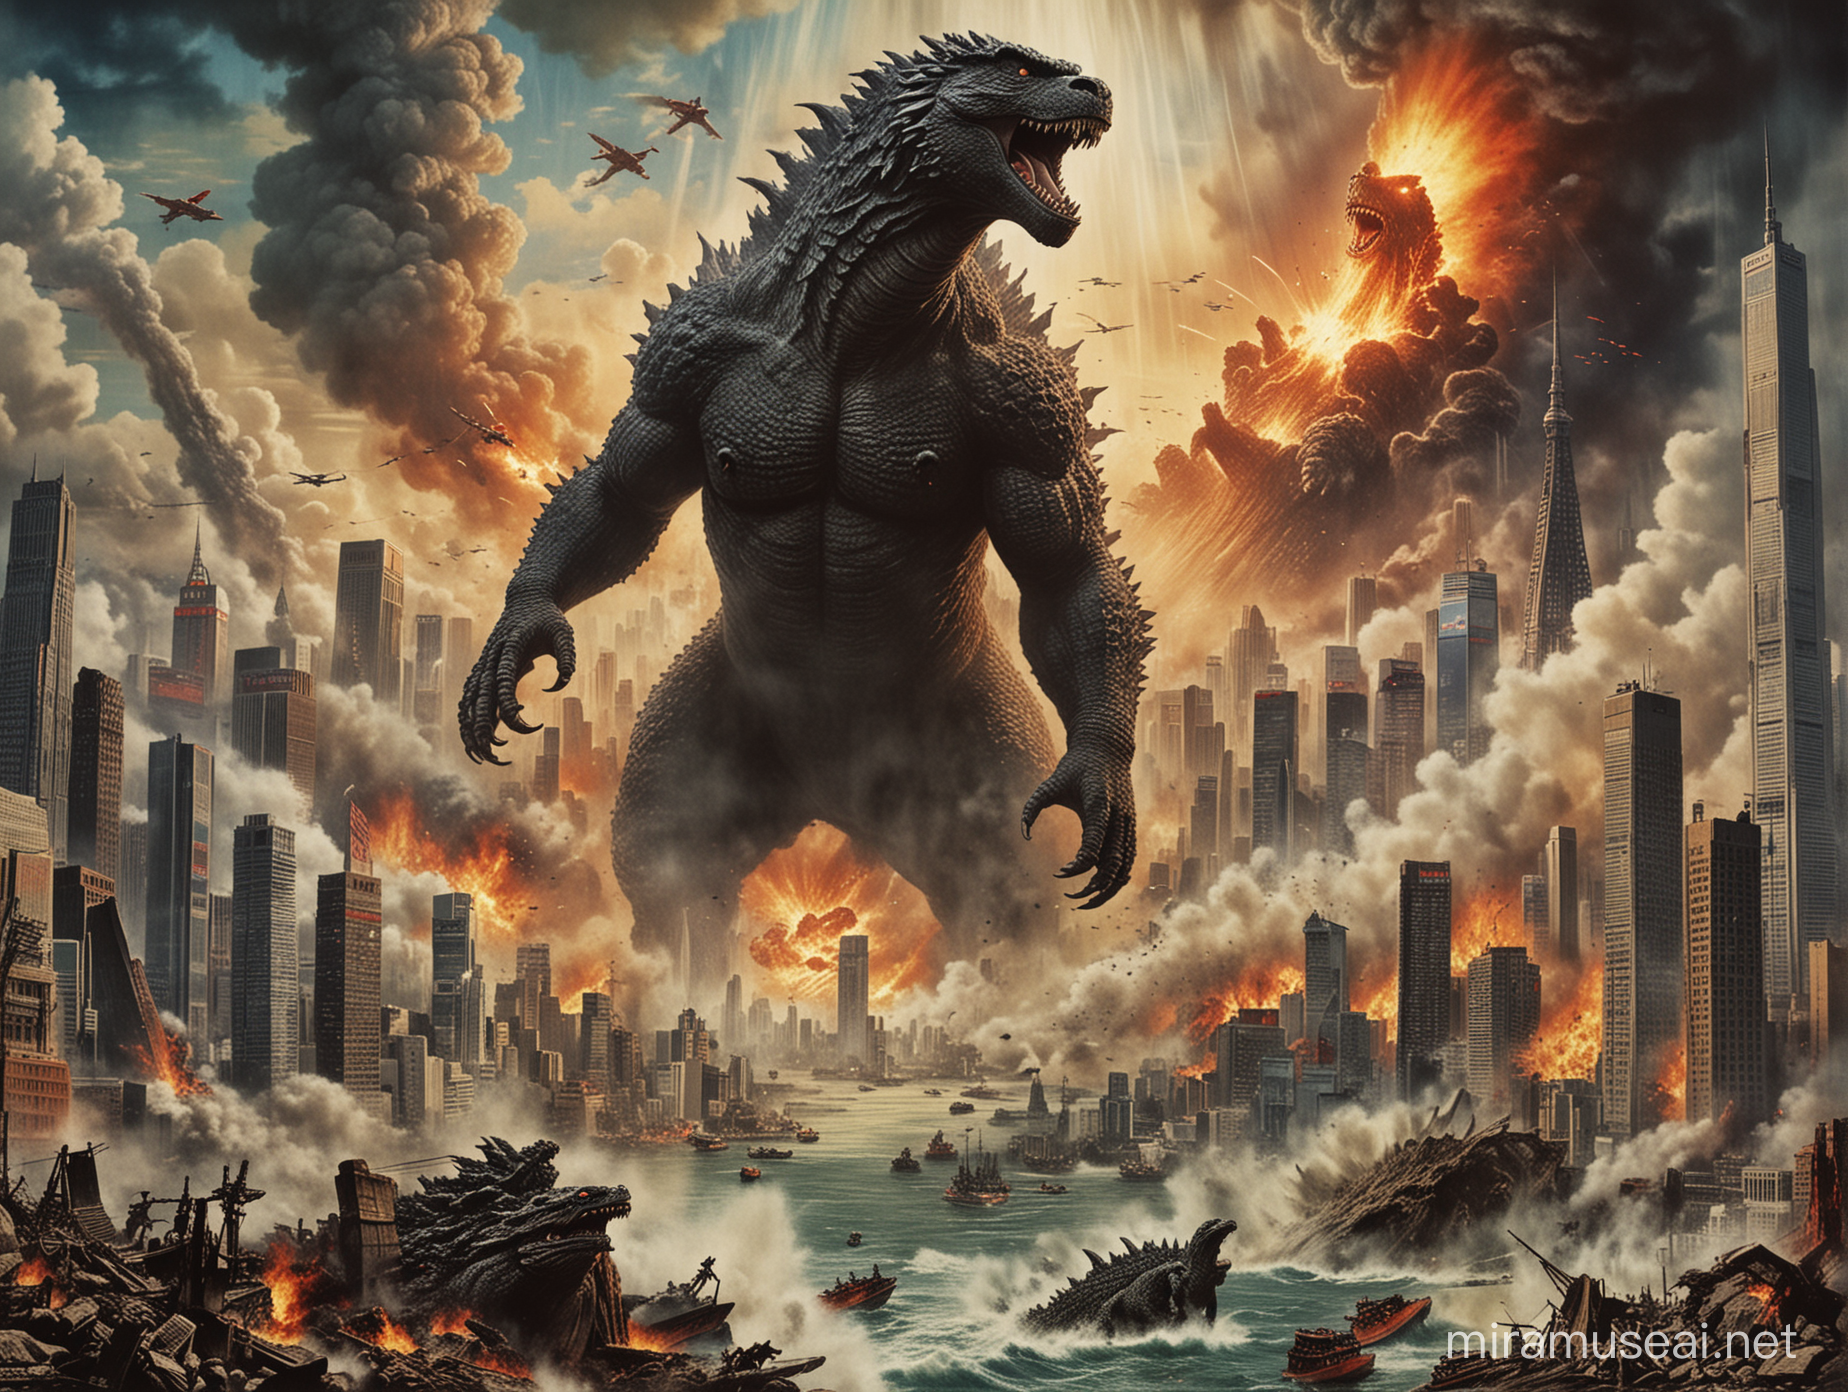 Godzilla Rampaging Through Tokyo Epic Destruction Movie Poster